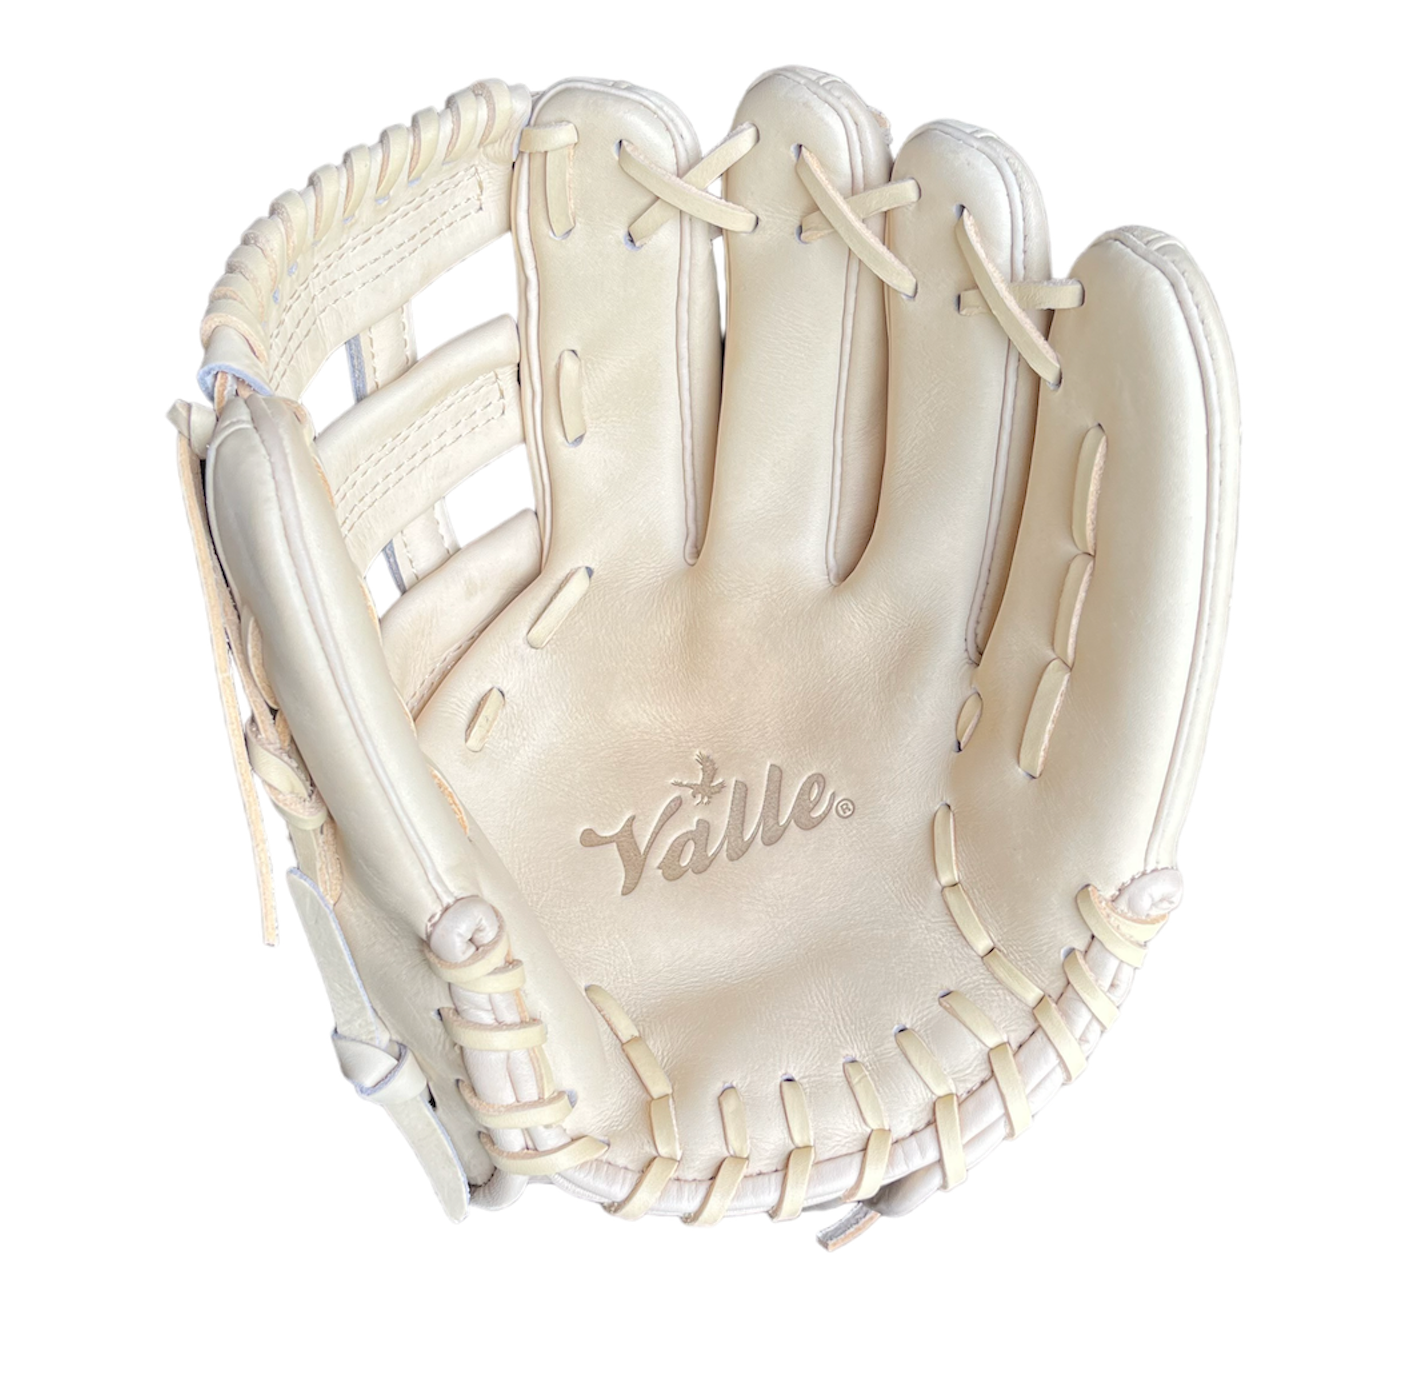 Valle 11.5" Game Glove